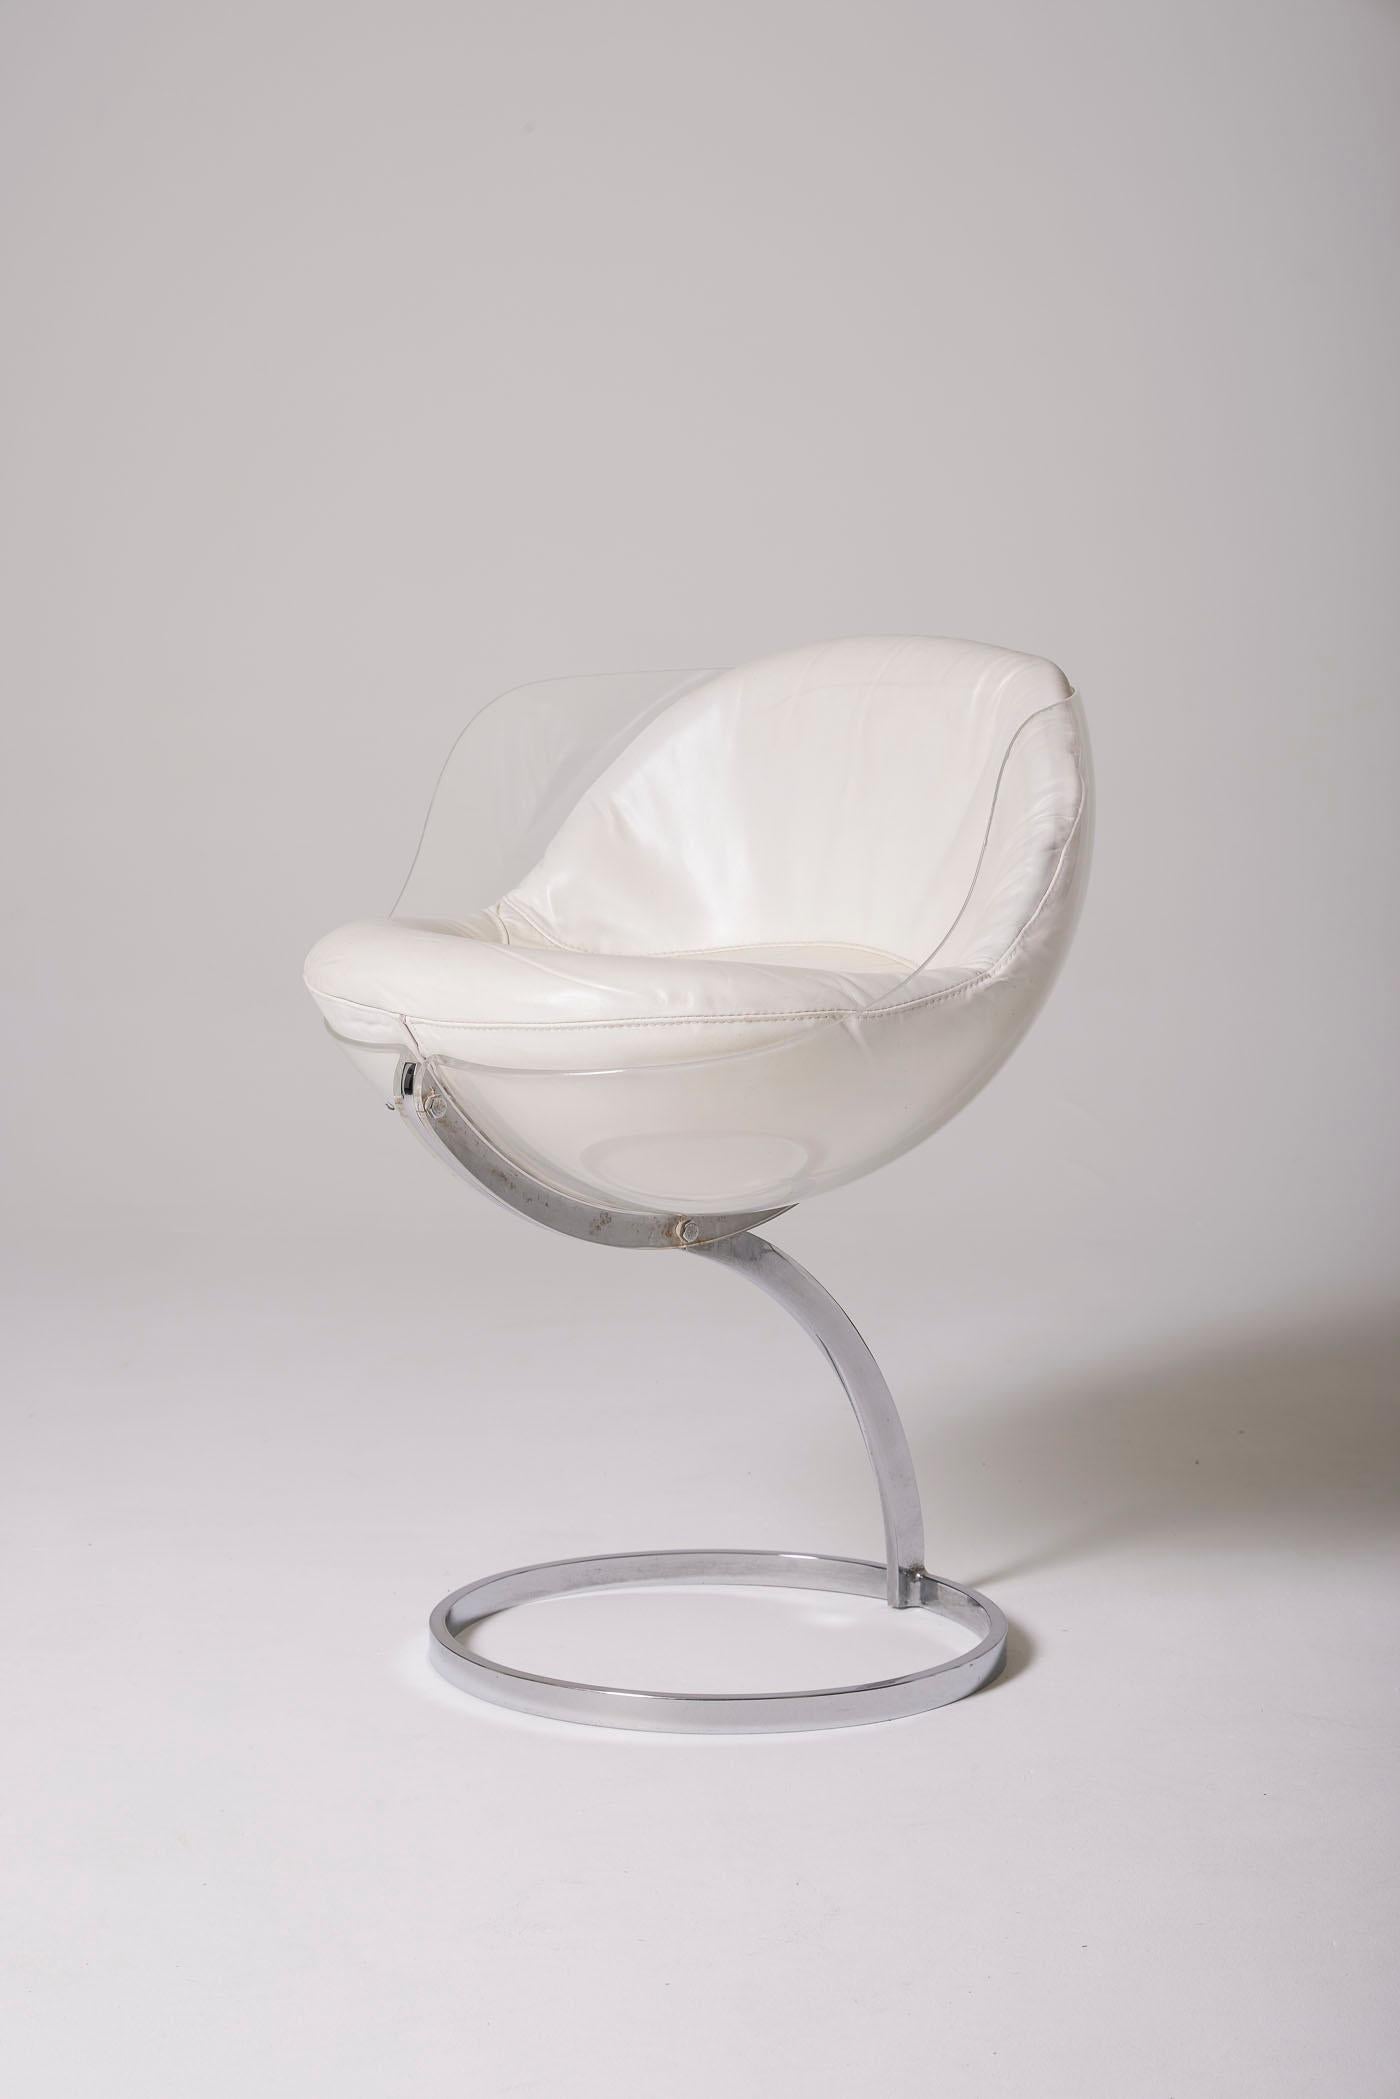 Sphère Chair des Designers Boris Tabacoff (1927-1985), 1970er-Jahre-Ausgabe von Mobilier Modulaire. Sitz aus transparentem Plexiglas auf einem verchromten Stahlgestell. Sehr guter Zustand. 2 Stühle verfügbar.
LP2271-2272
